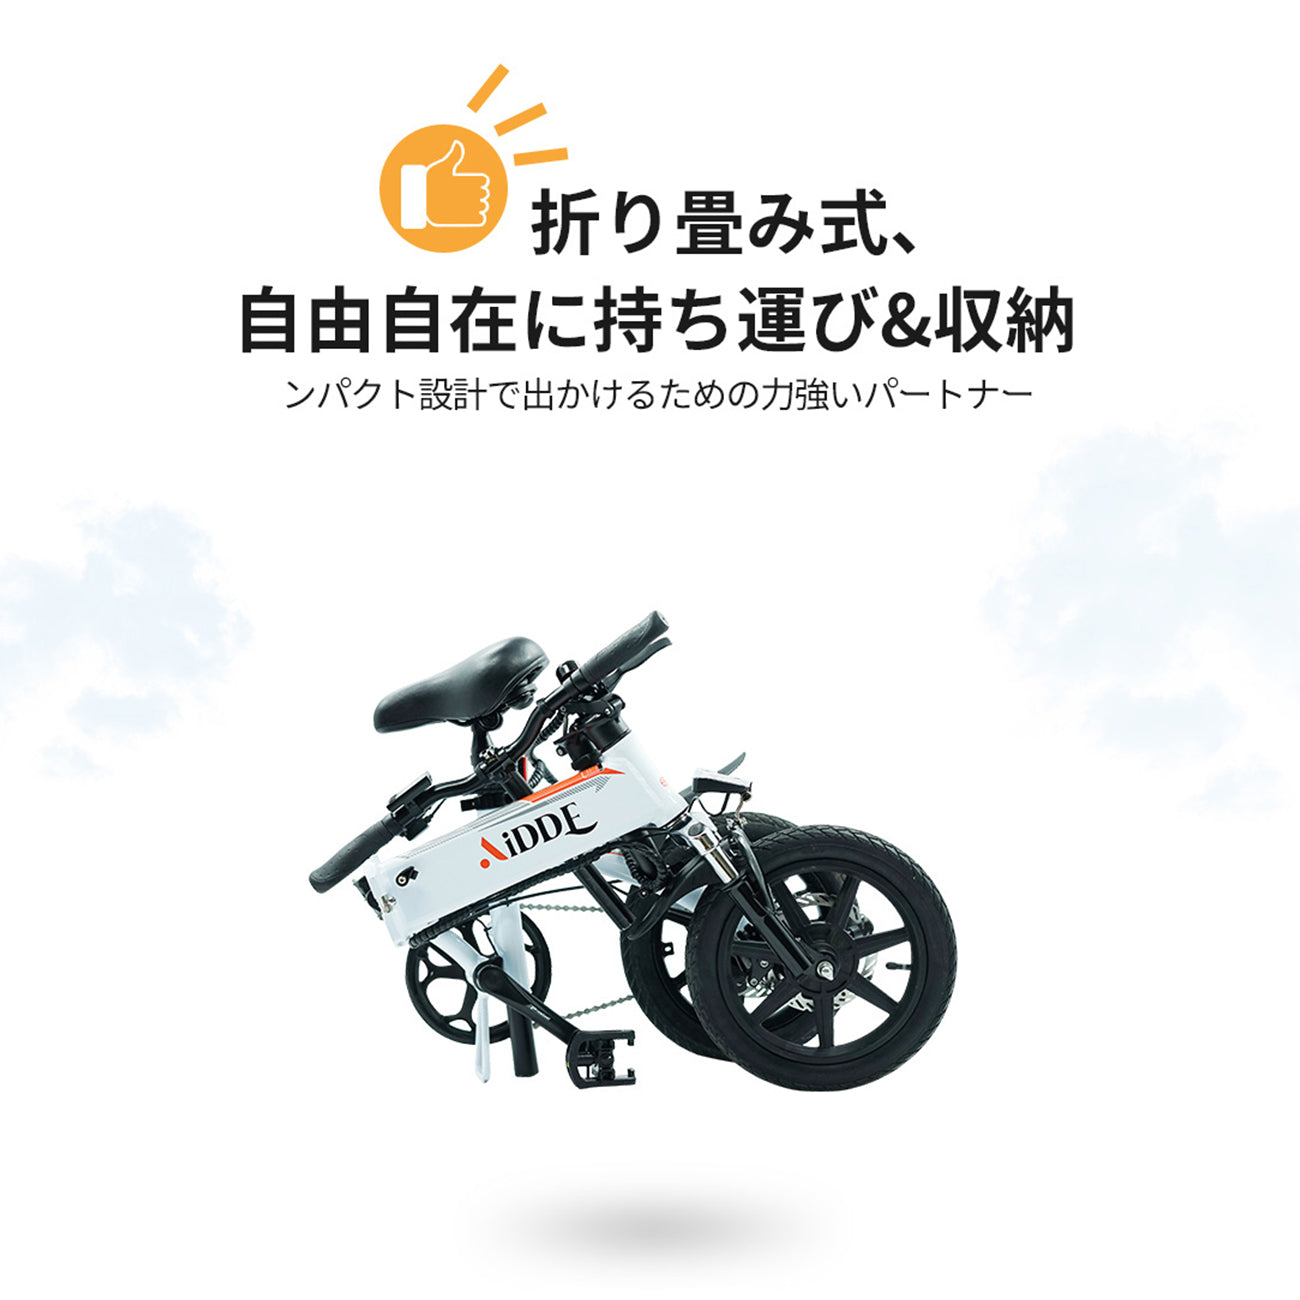 AiDDE 電動アシスト自転車 A1 スポーティースタイル